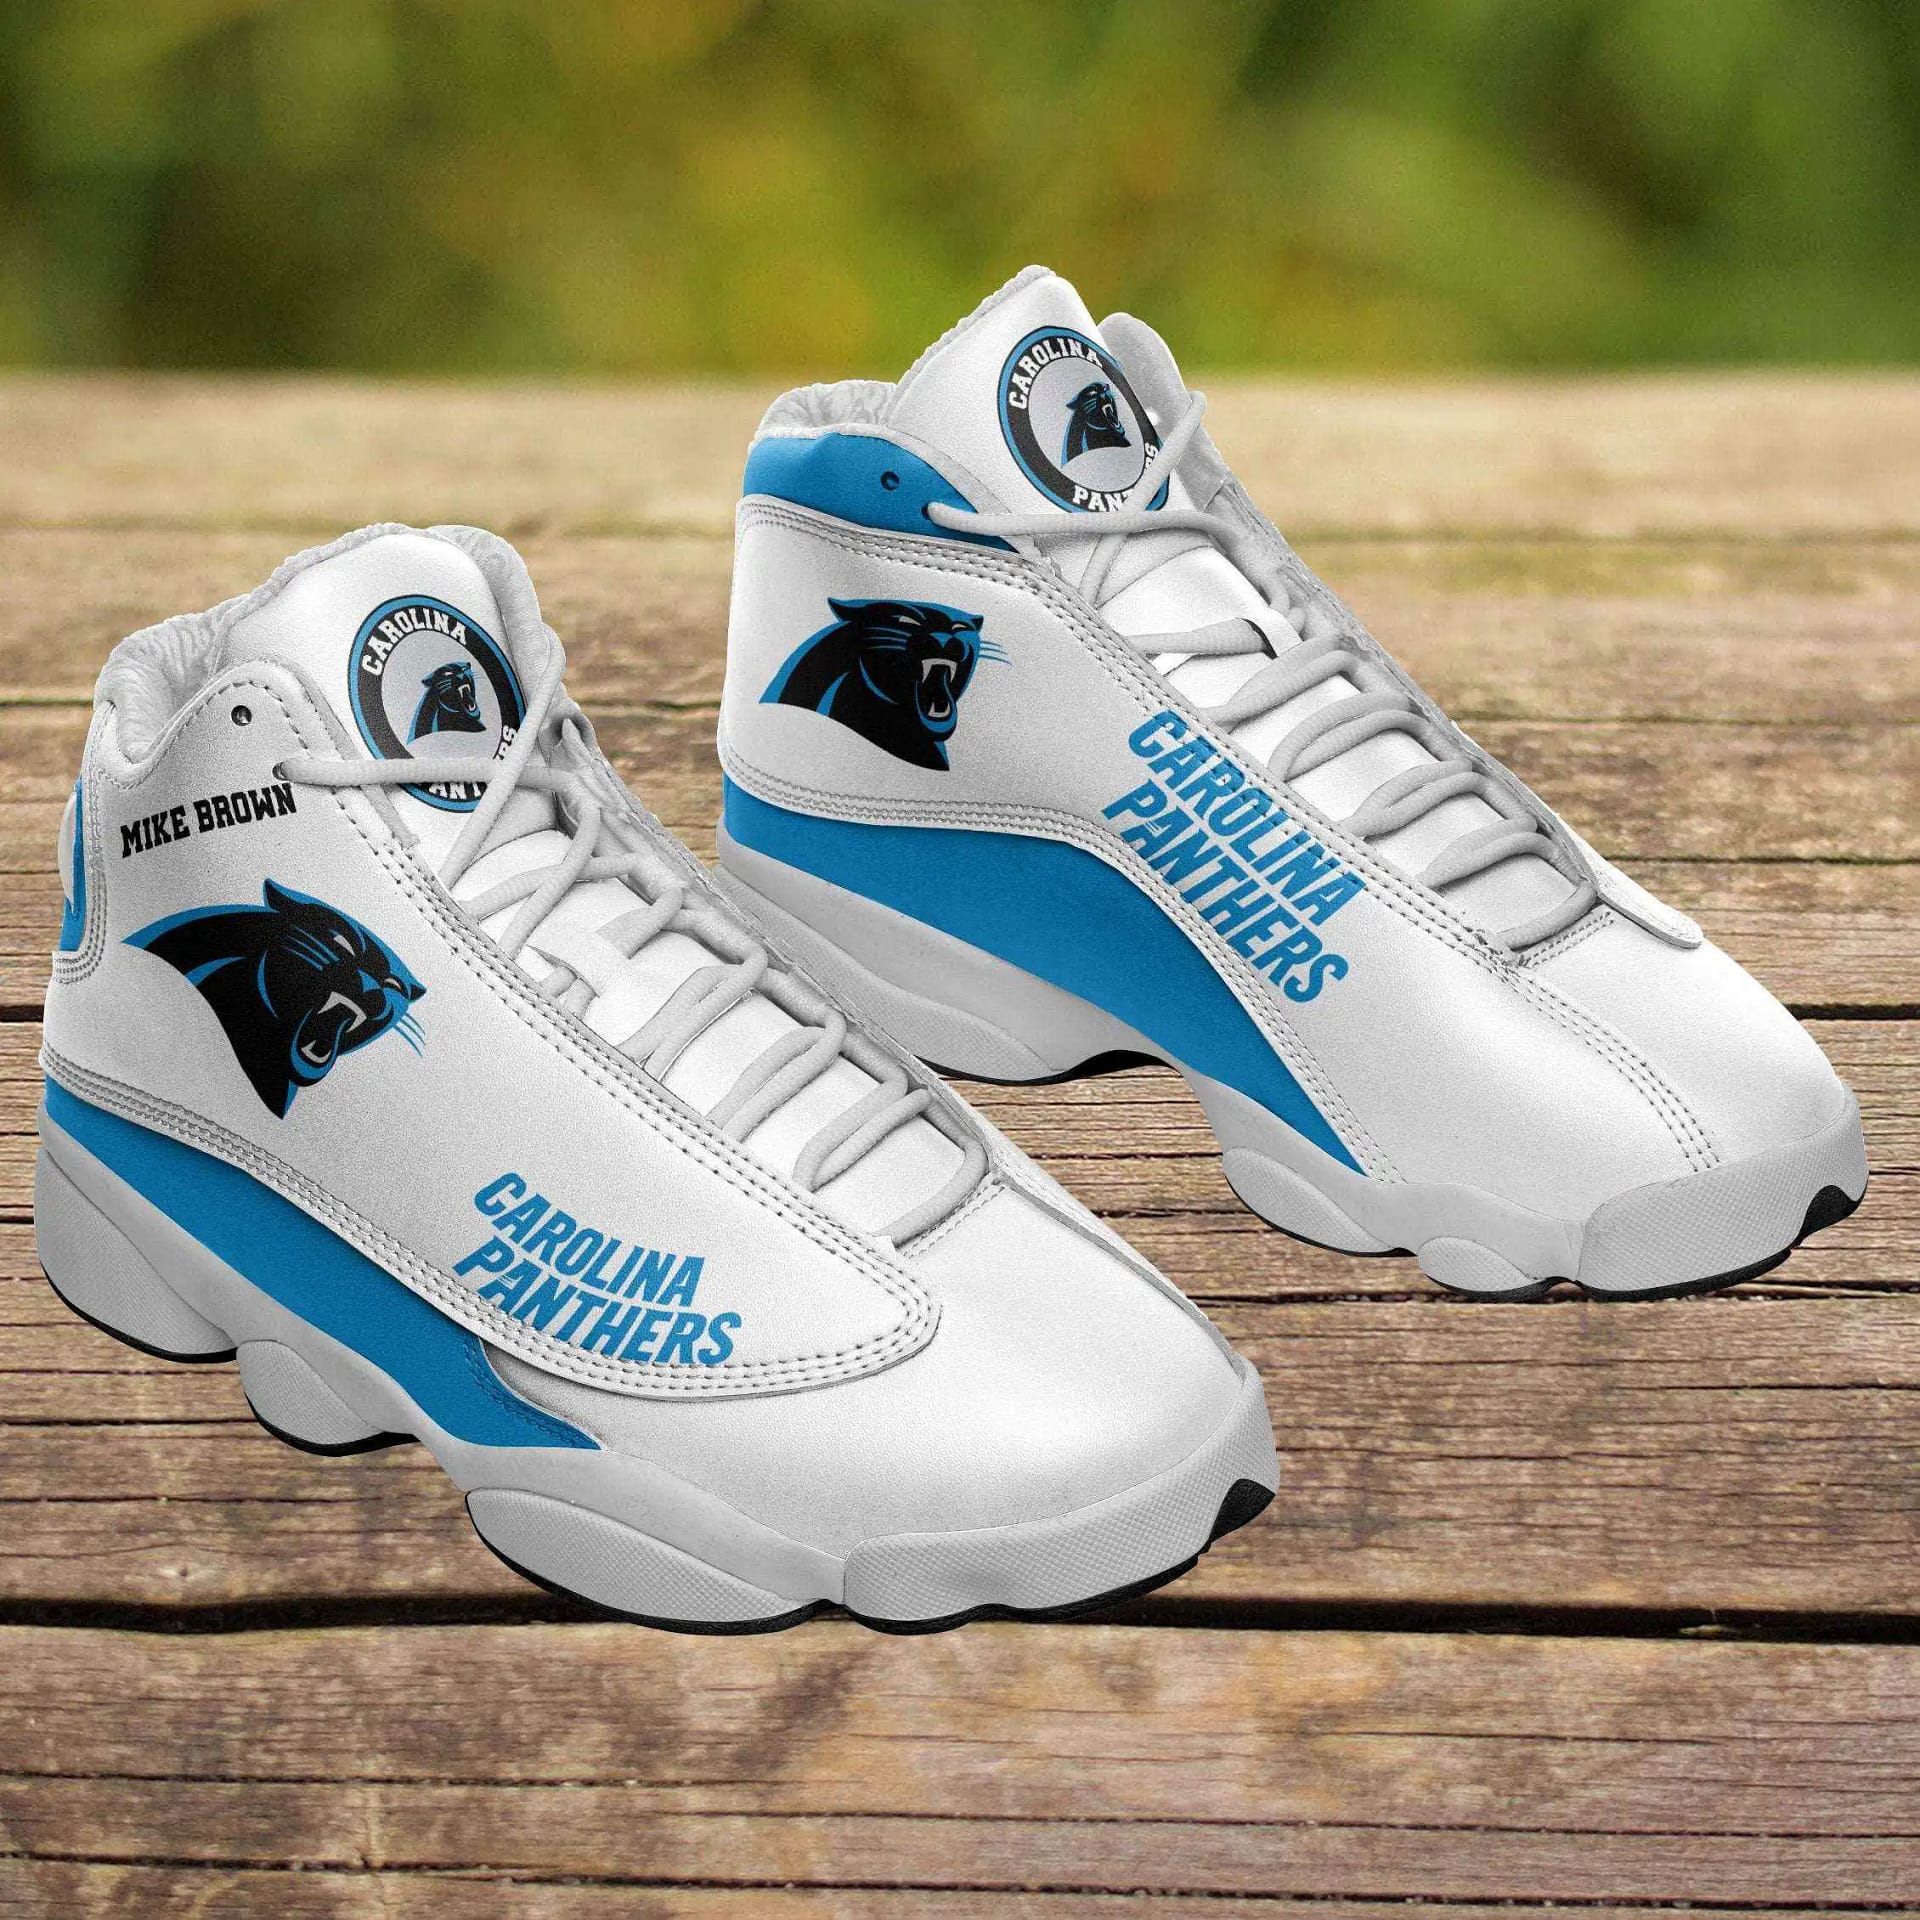 Carolina Panthers Air Jordan Shoes